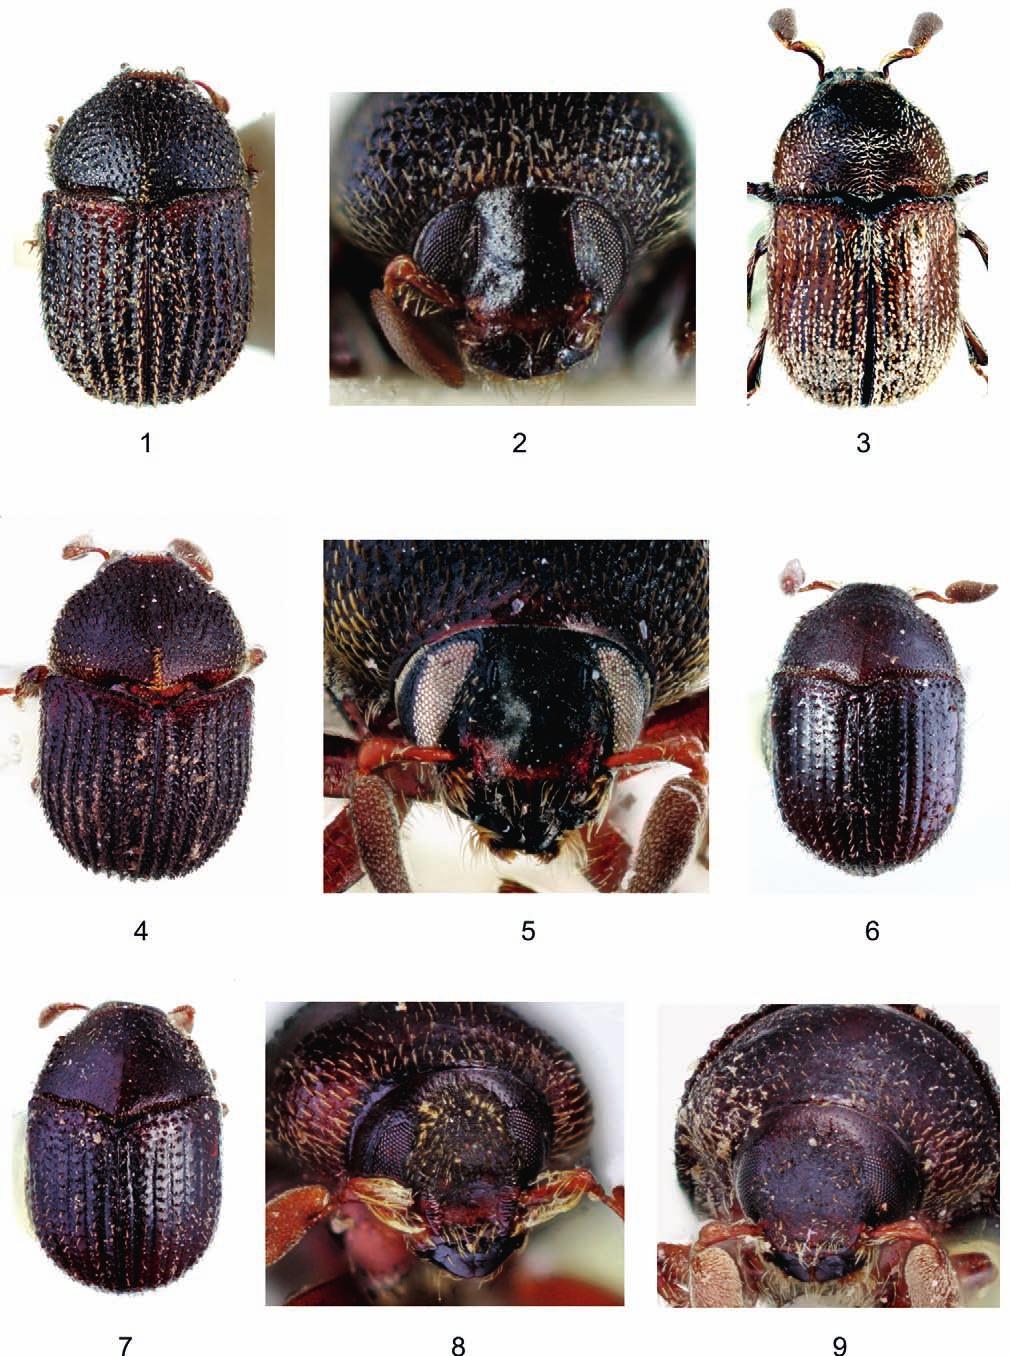 270 Koleopt. Rdsch. 81 (2011) Figs. 1 9: 1 2: Chramesus granulipennis, 1) holotype, habitus, male, 2) frons, male; 3) C. peruanus, habitus male; 4 5: C.